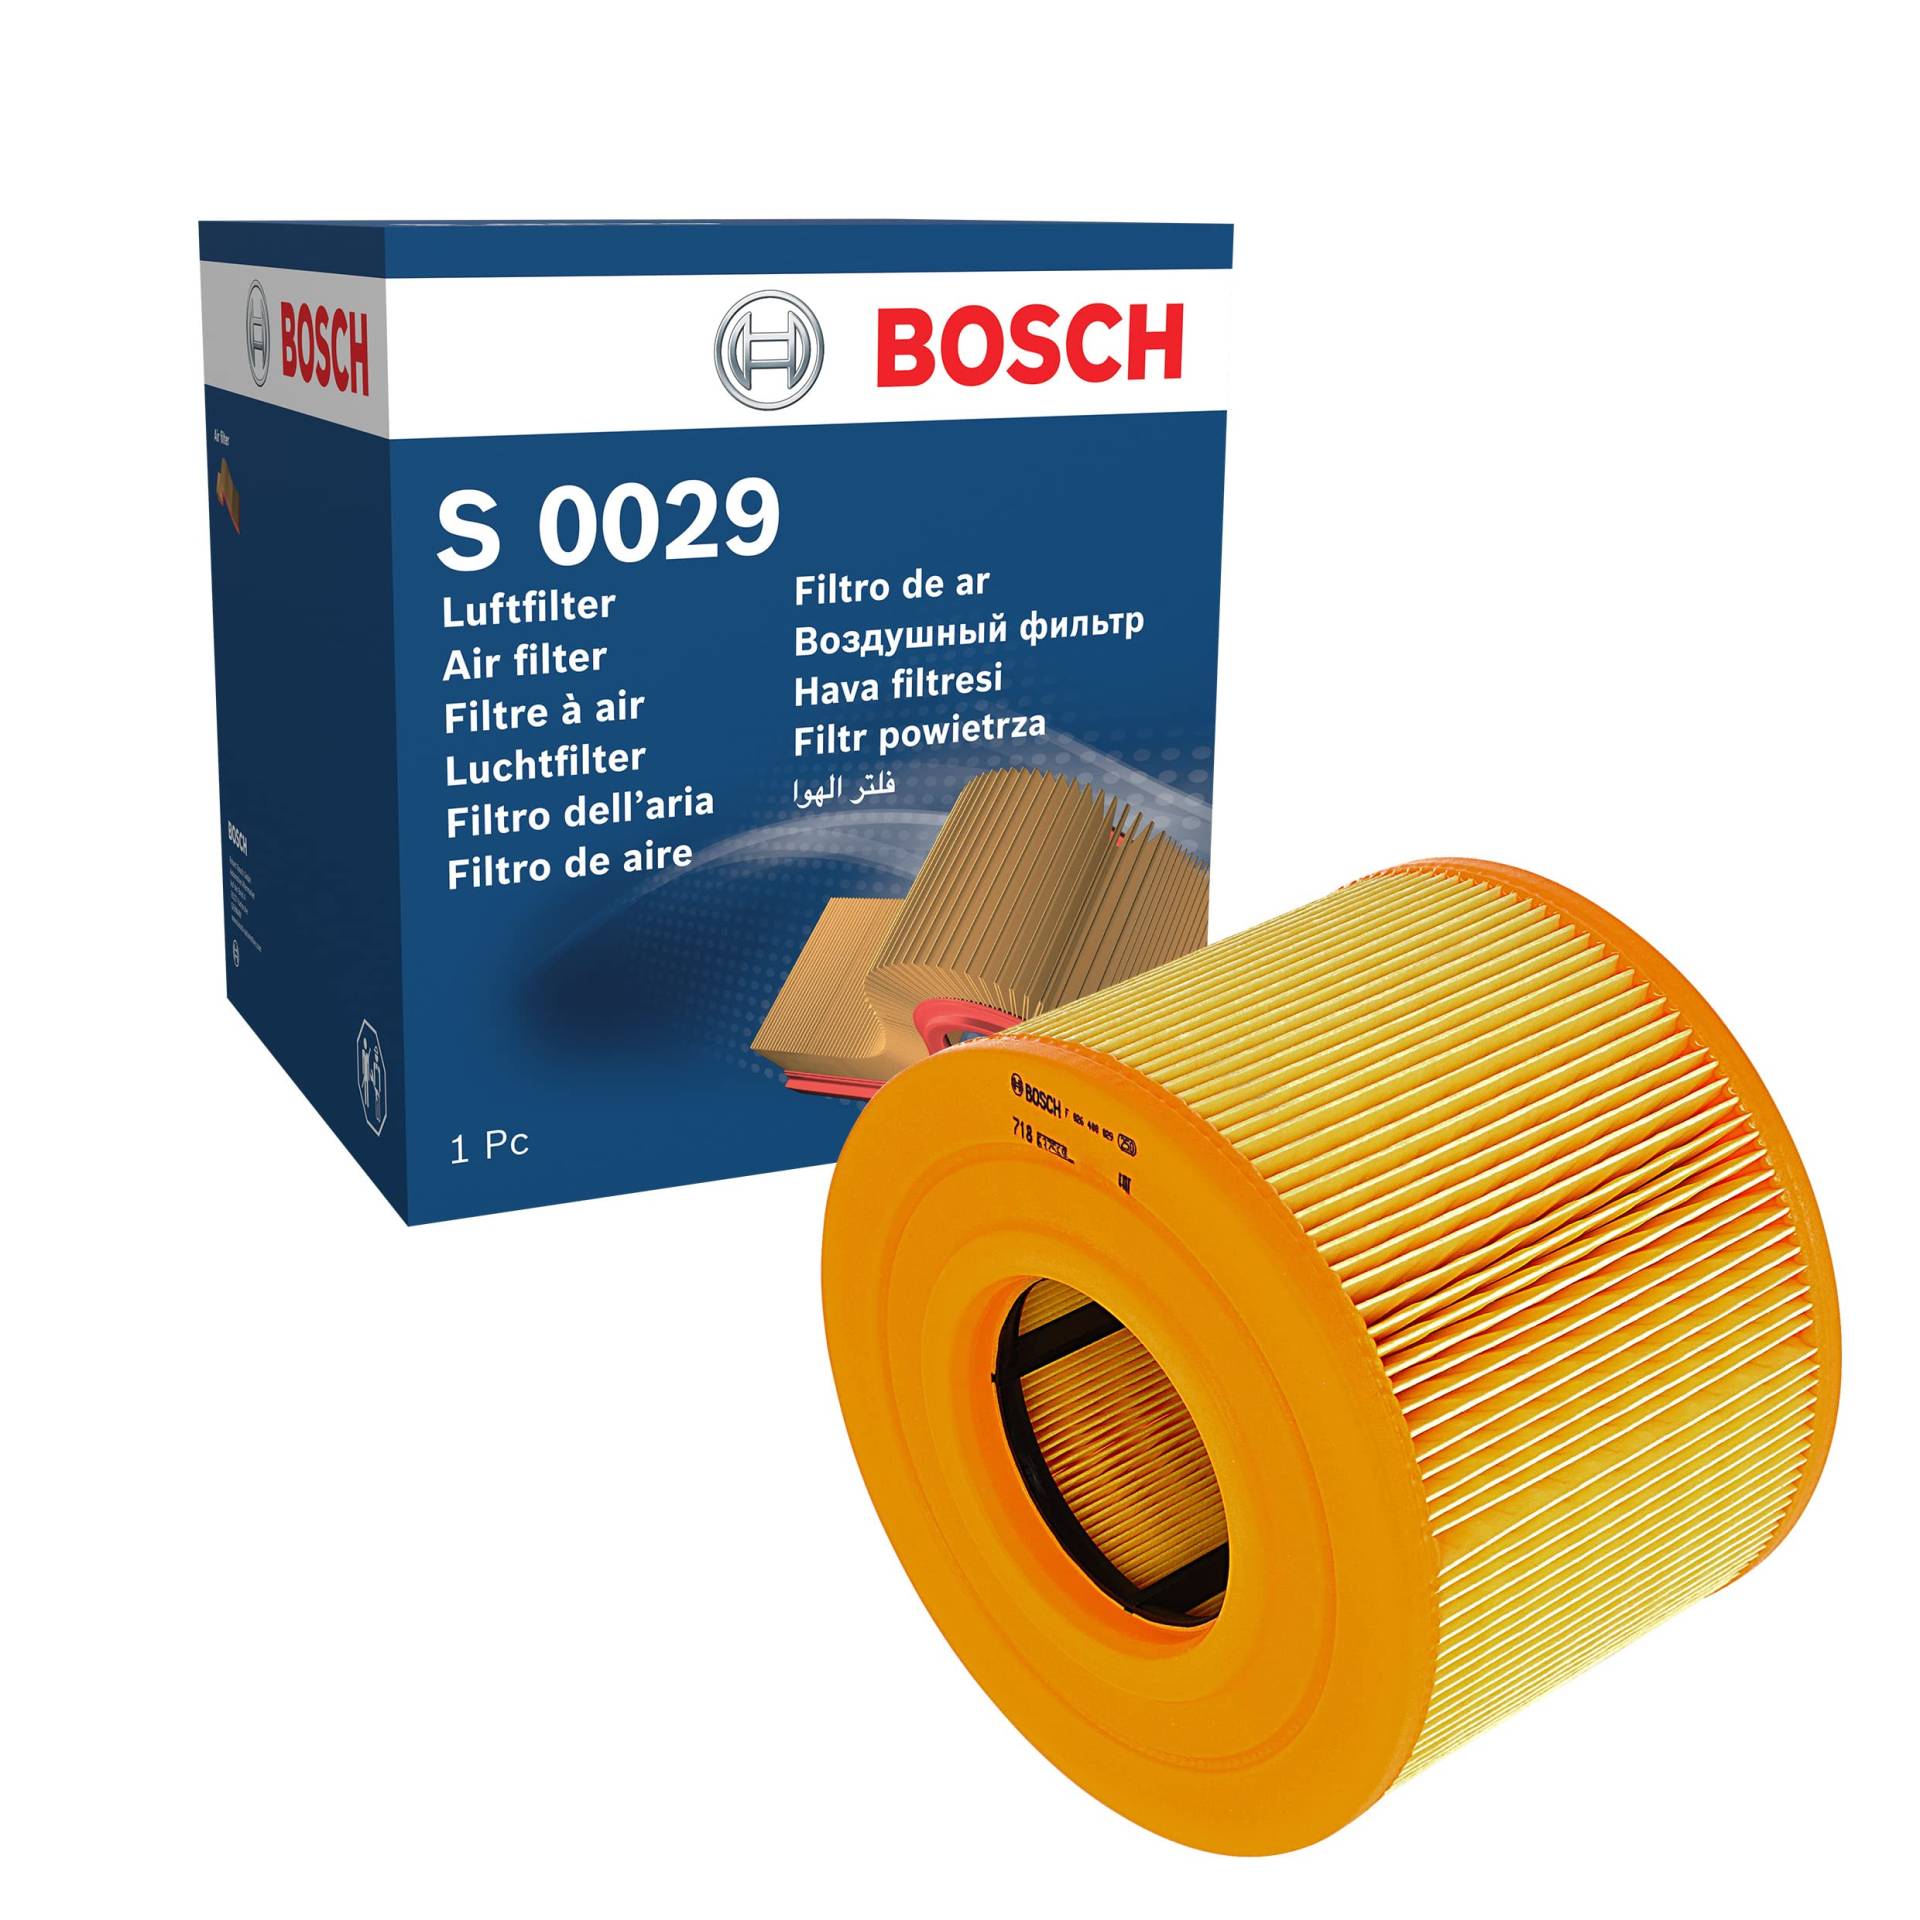 Bosch S0029 - Luftfilter Auto von Bosch Automotive